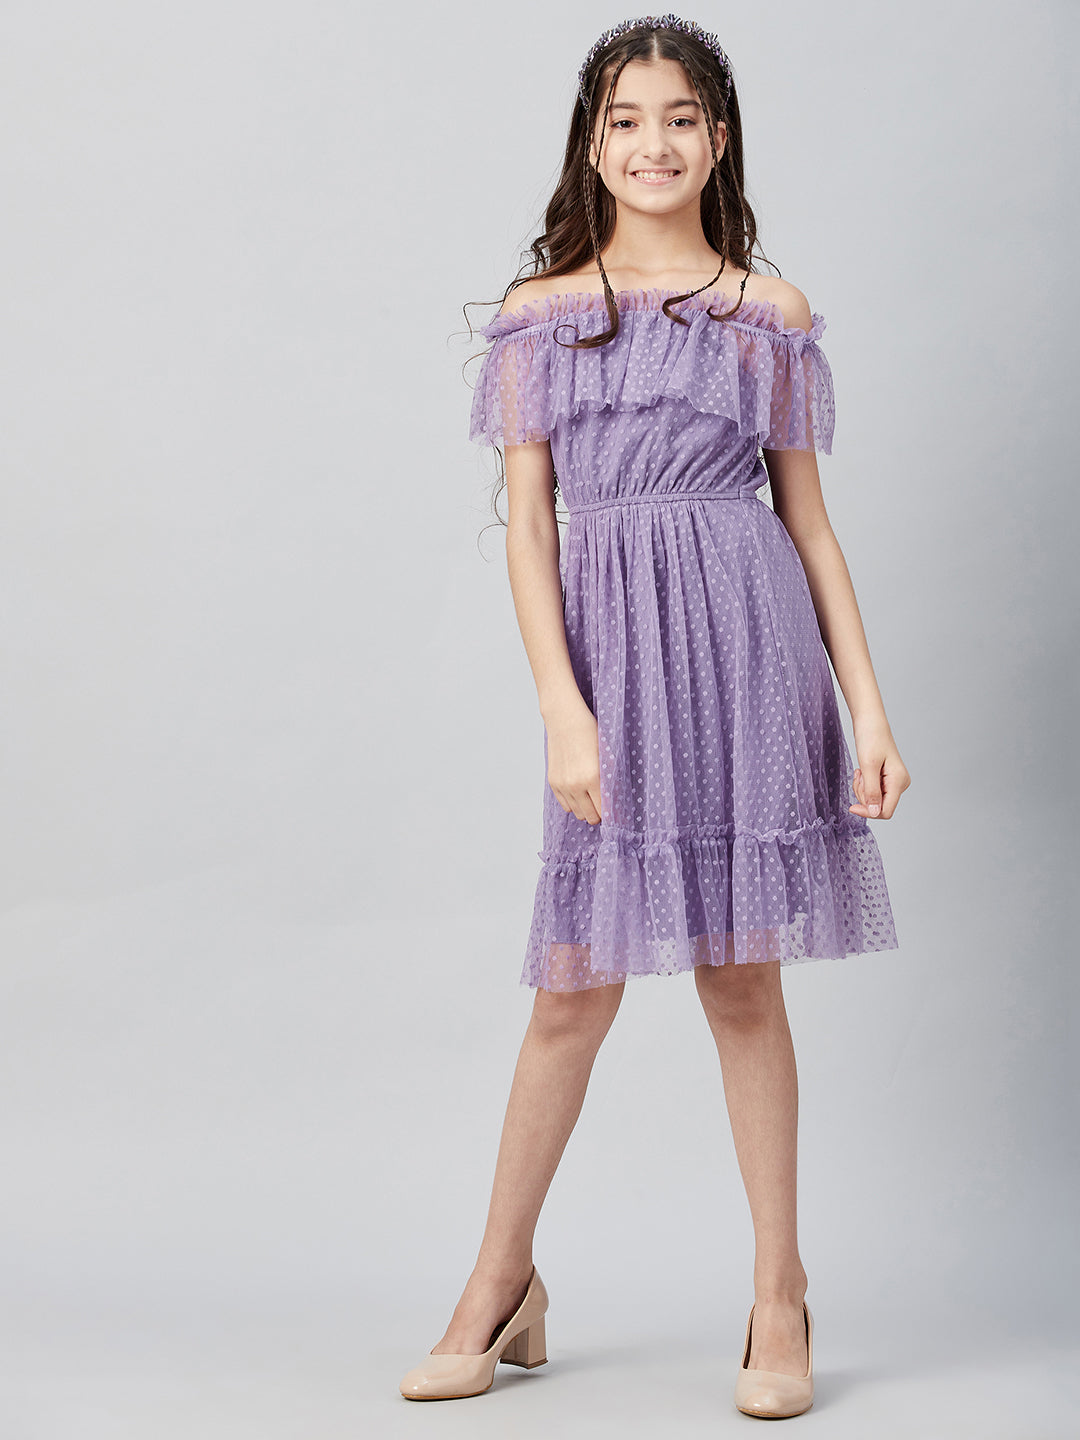 Athena Girl Lavender Off-Shoulder Dress - Athena Lifestyle